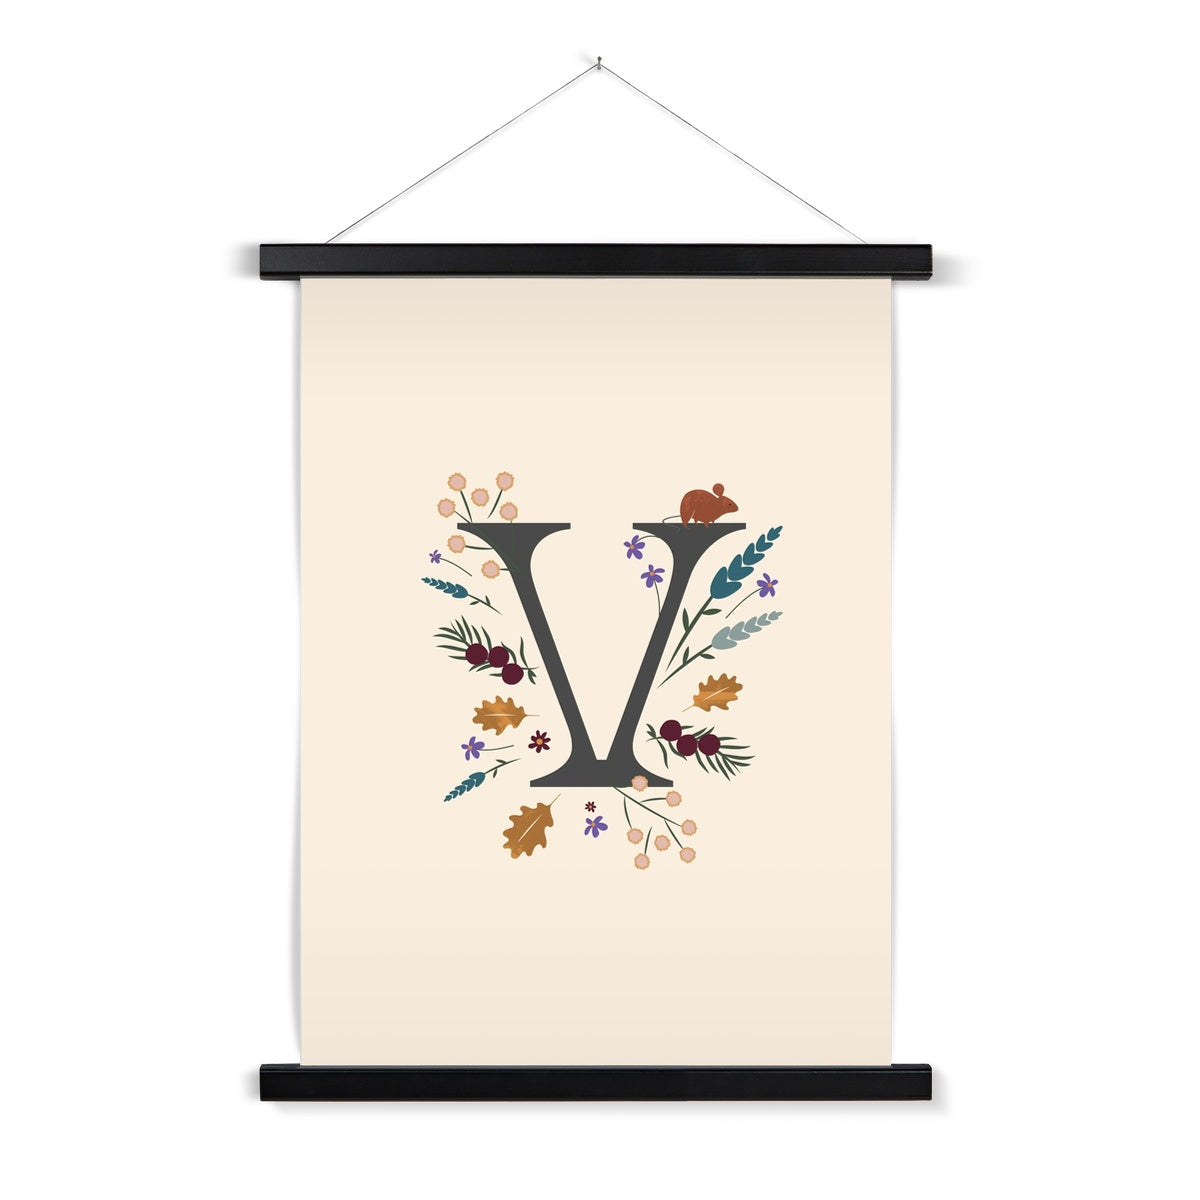 Initial Letter 'V' Woodlands Fine Art Print with Hanger